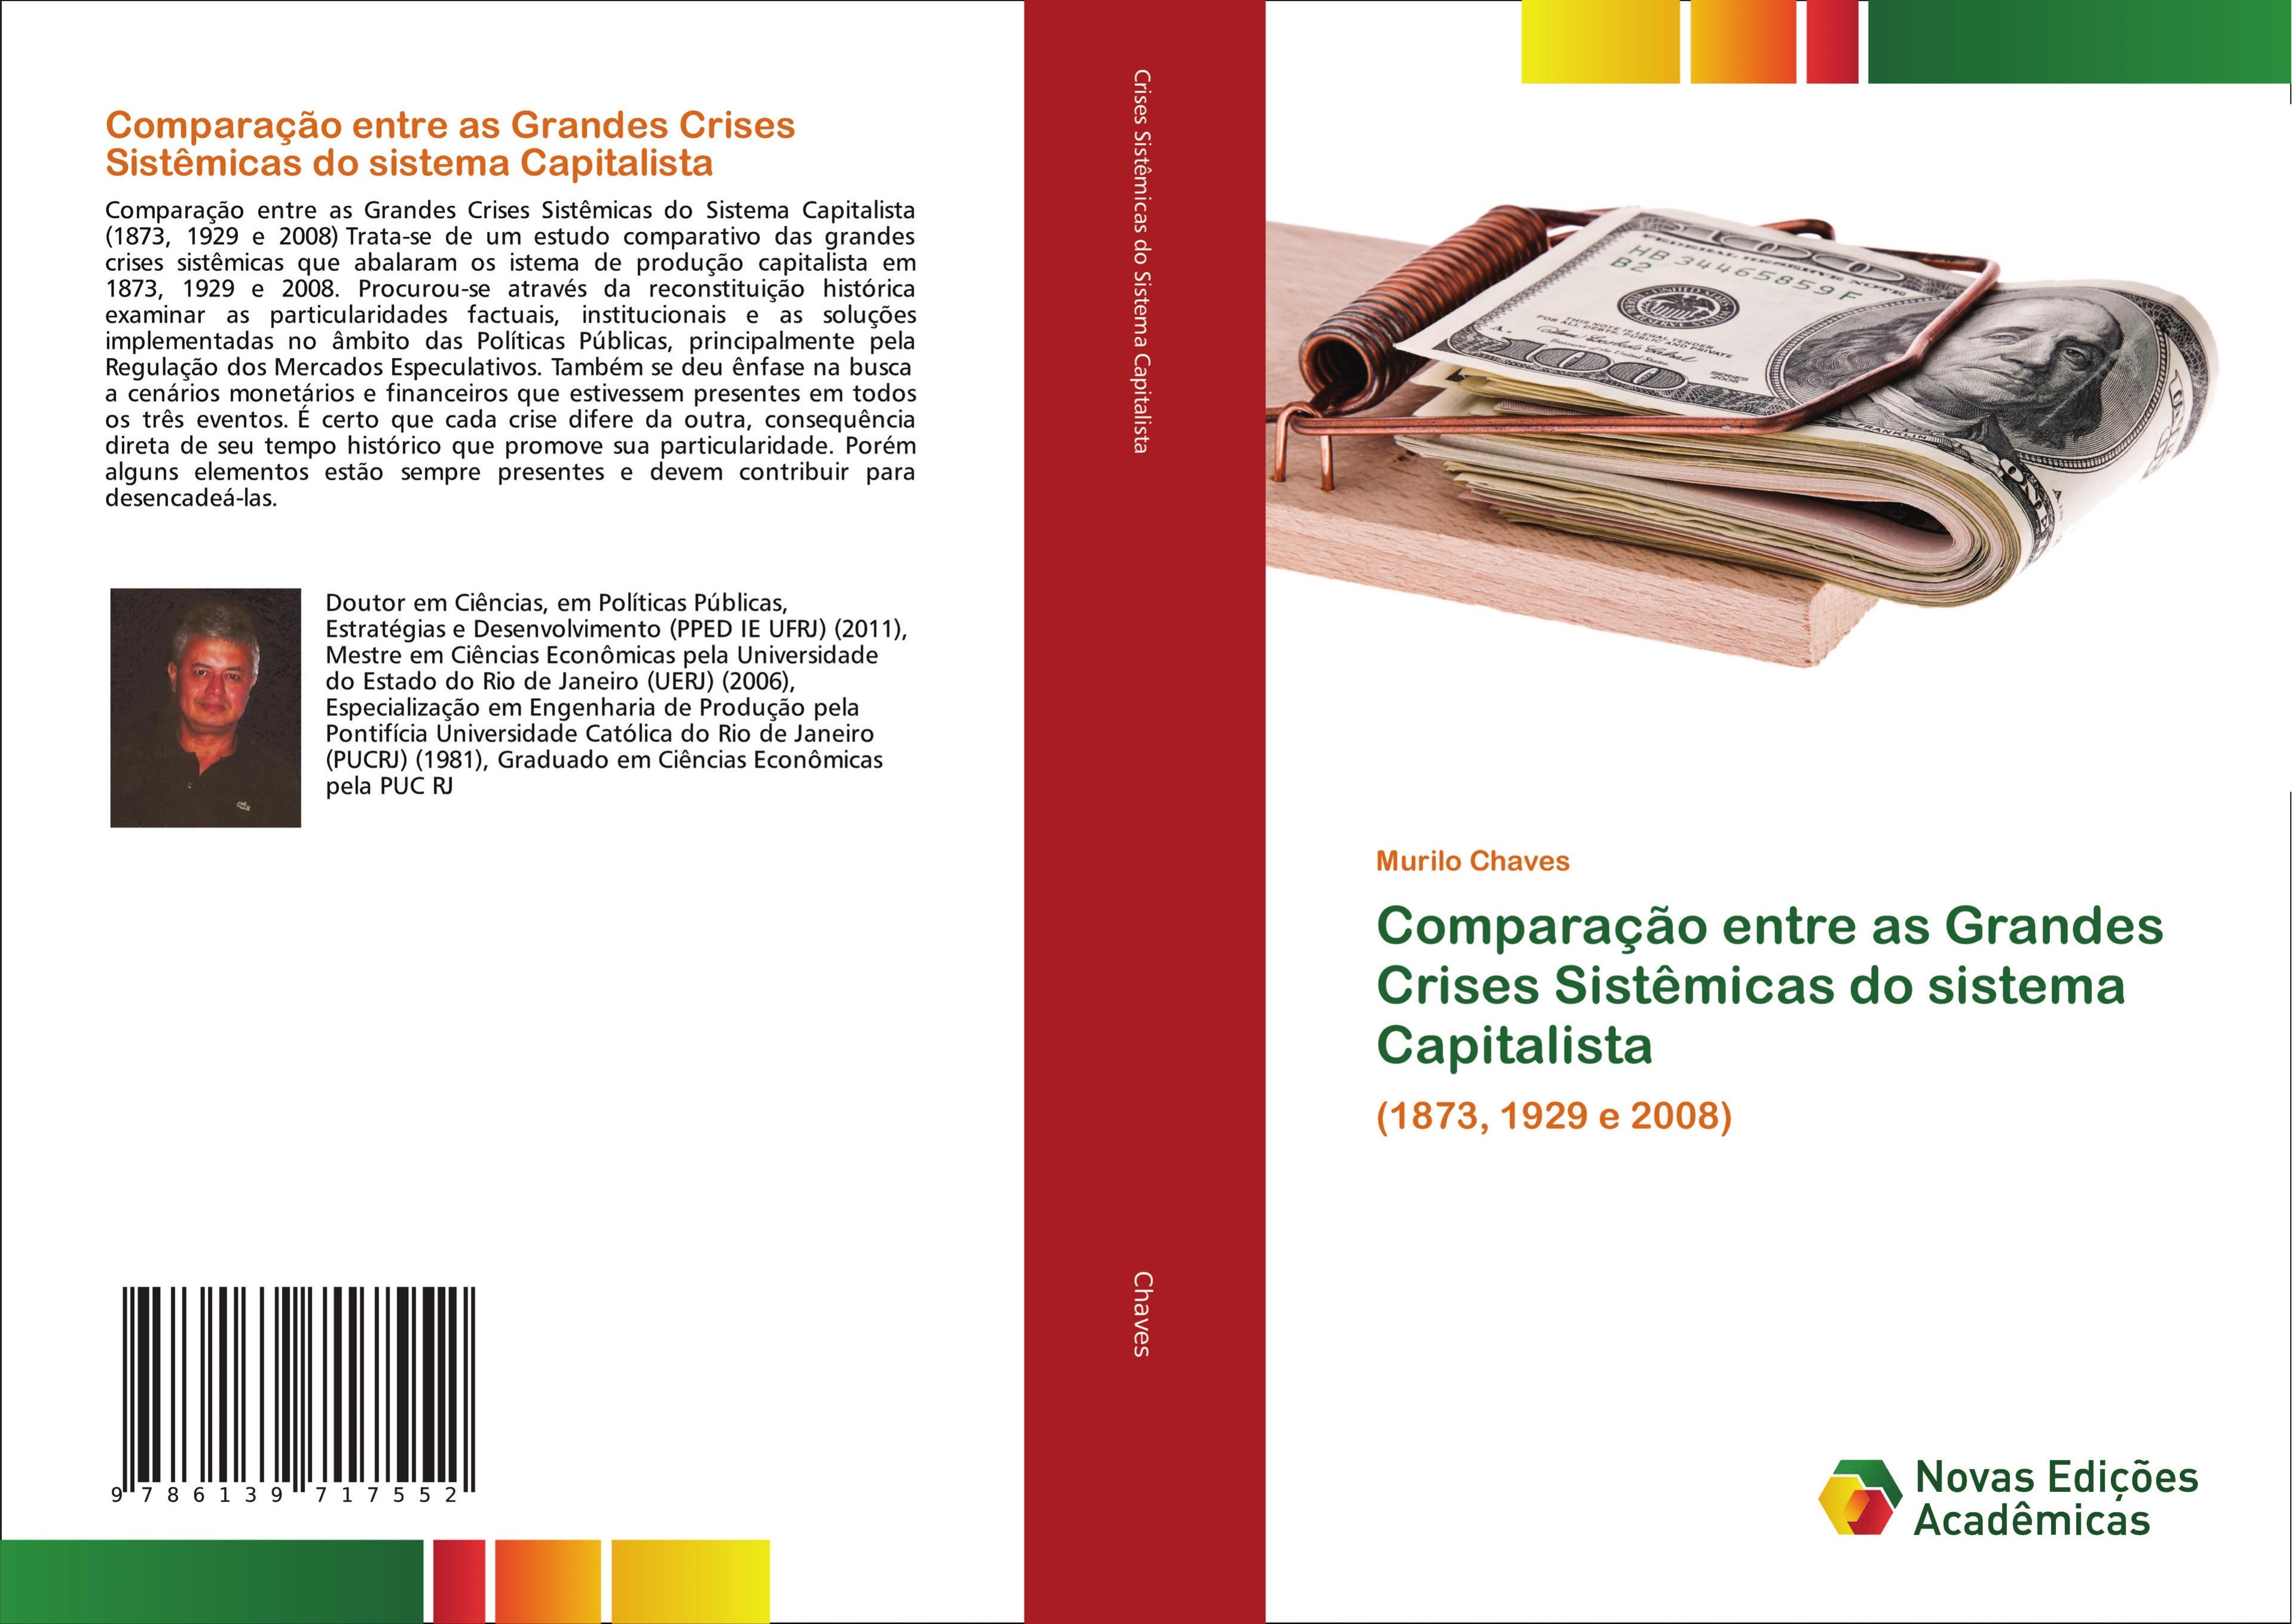 Comparação entre as Grandes Crises Sistêmicas do sistema Capitalista  Murilo Chaves  Taschenbuch  Portugiesisch  2018 - Chaves, Murilo